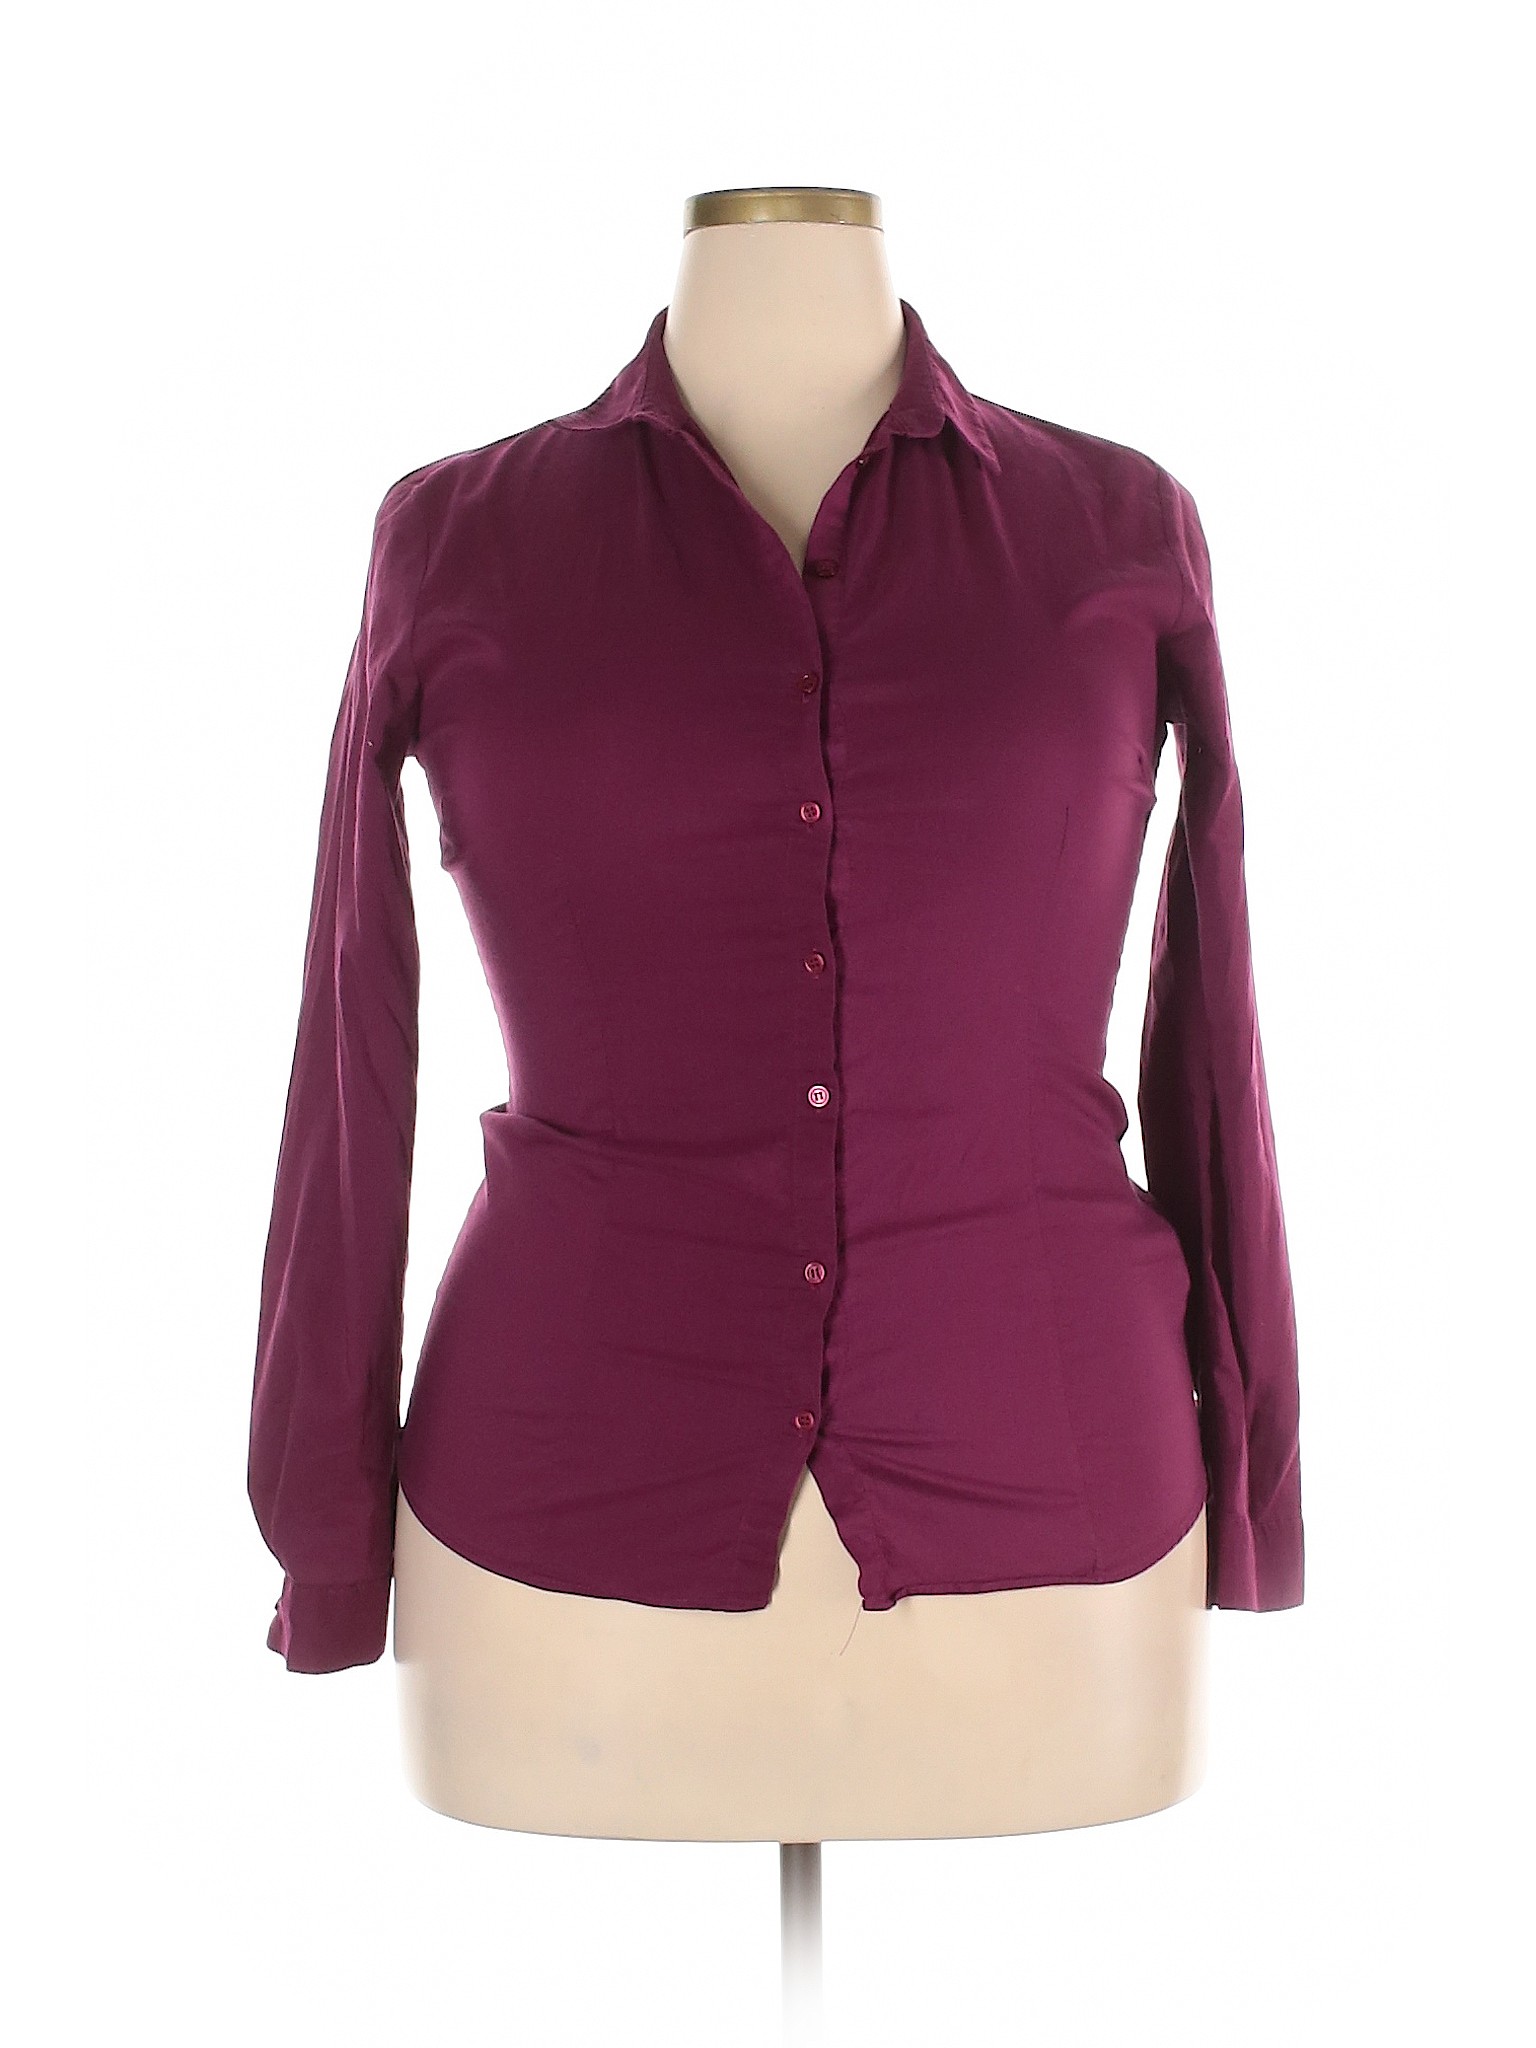 Assorted Brands Women Purple Long Sleeve Button-Down Shirt XXL | eBay